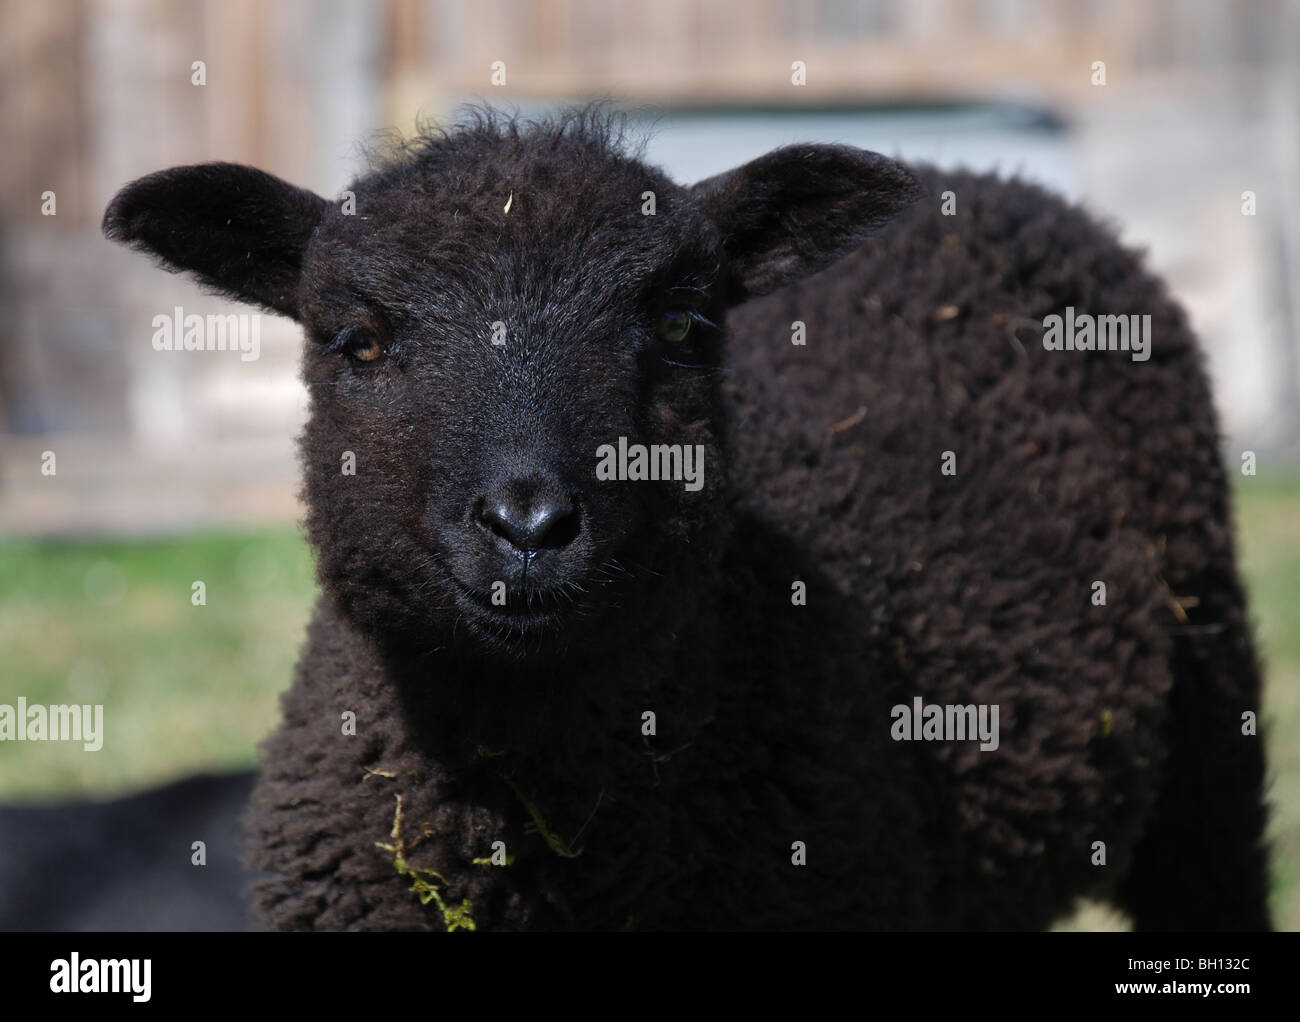 Little black lamb, the black sheep Stock Photo